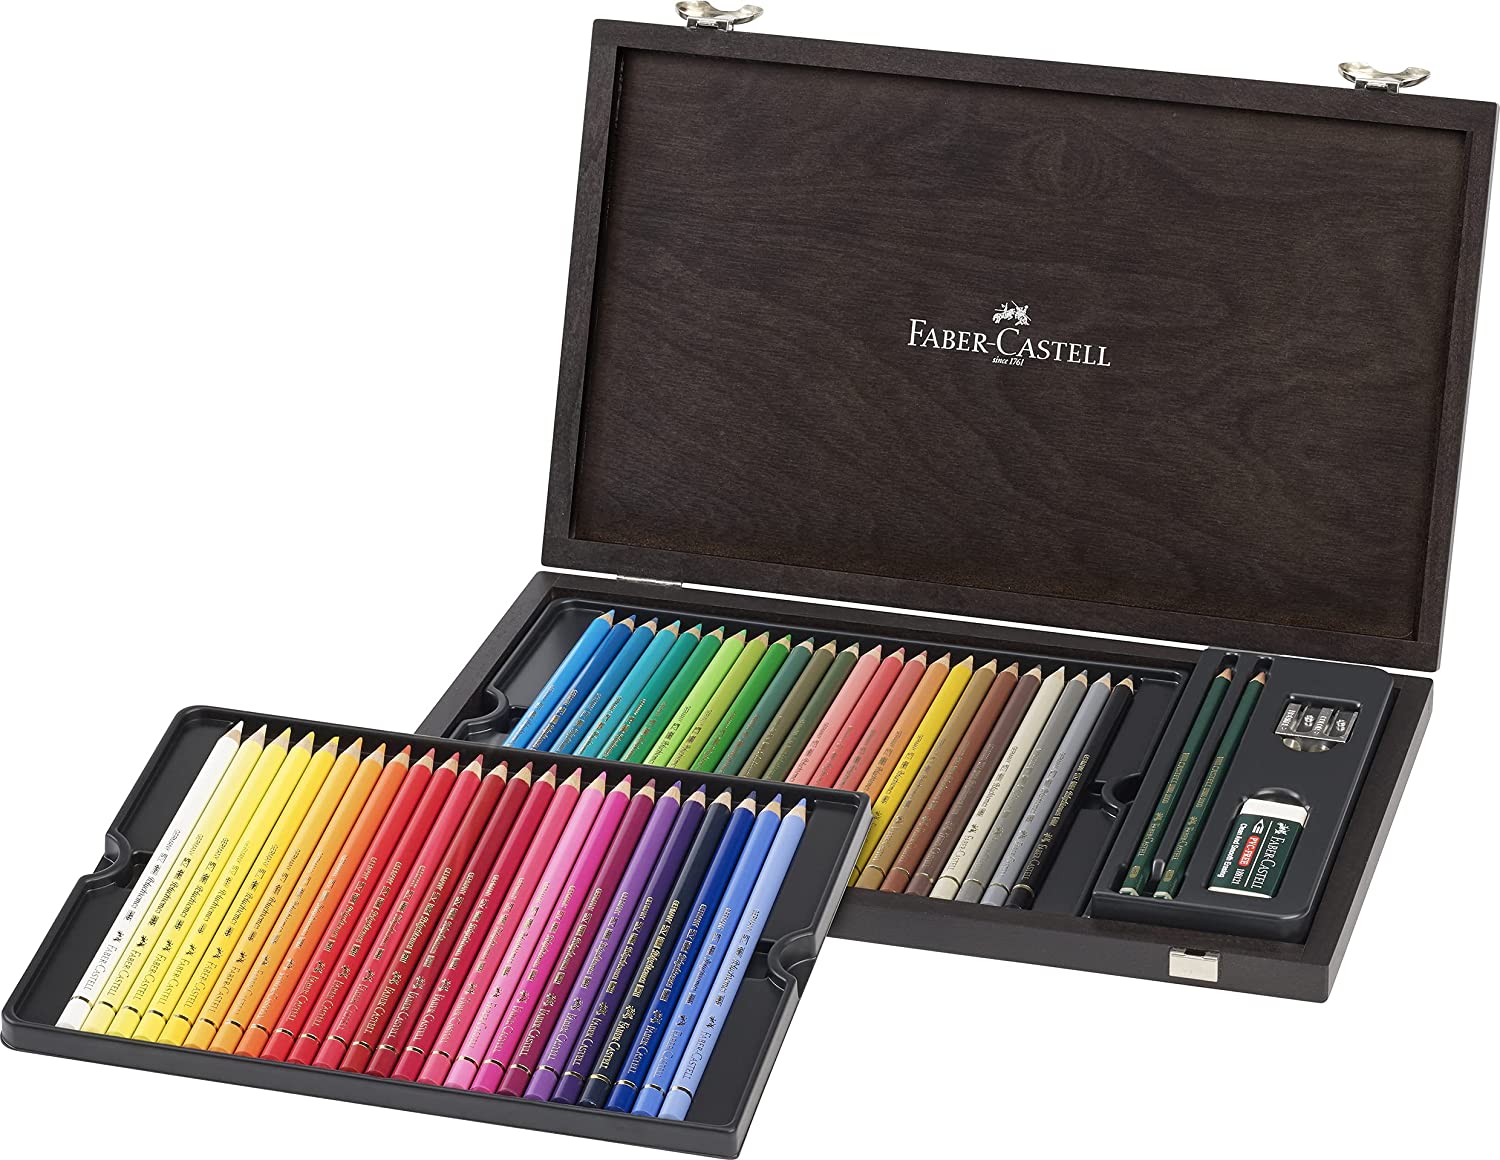  Faber Castell Polychromos Pencils